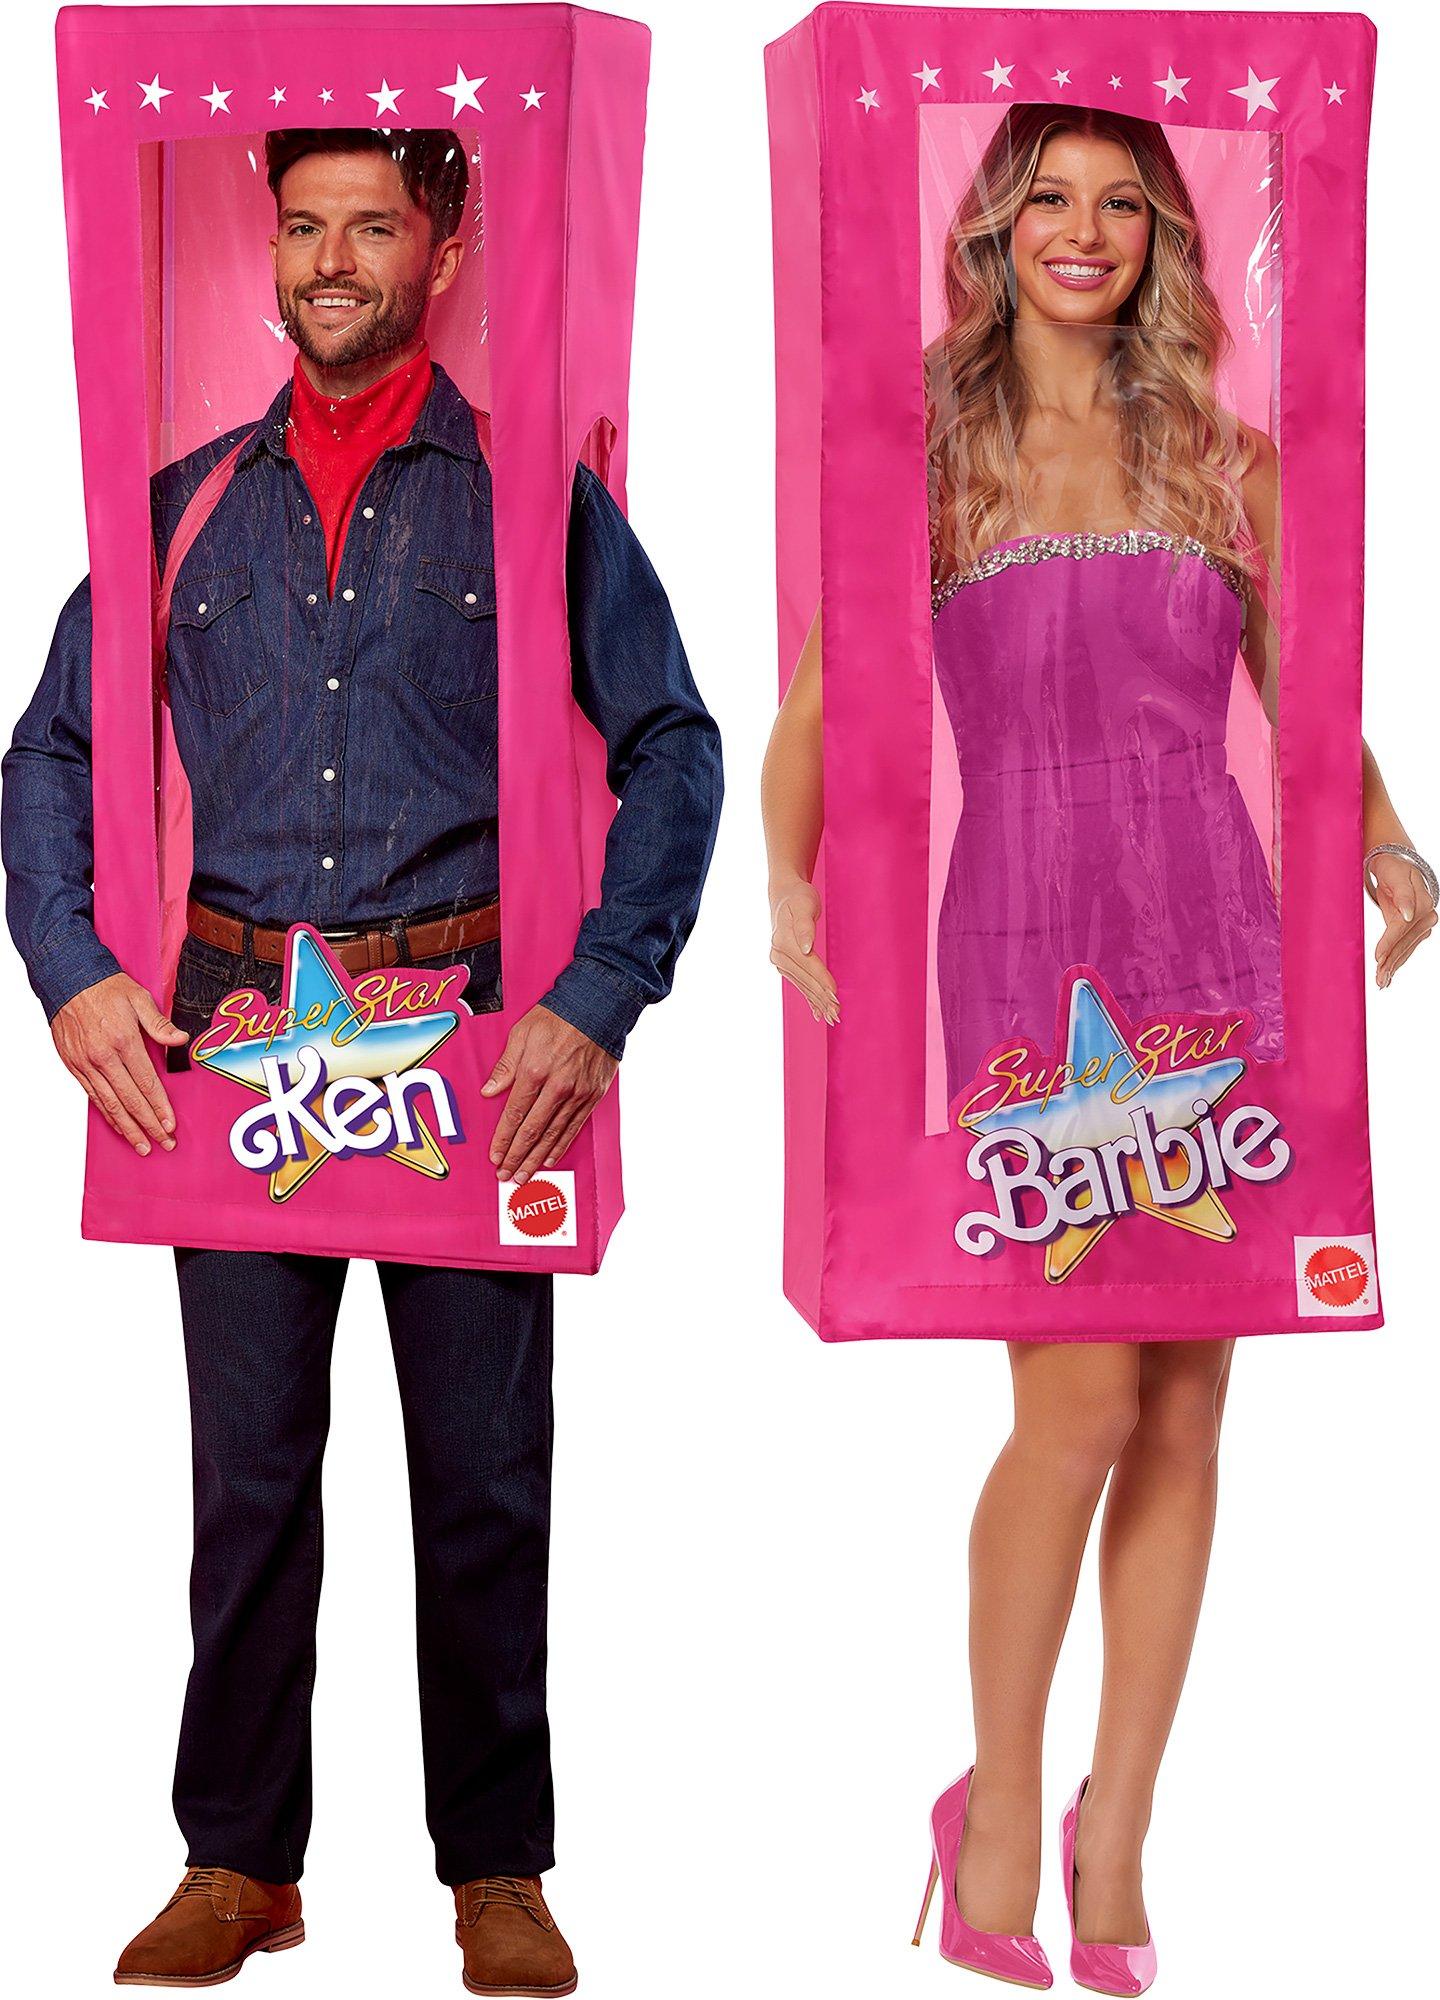 Barbie & Ken Boxes Couple Costume